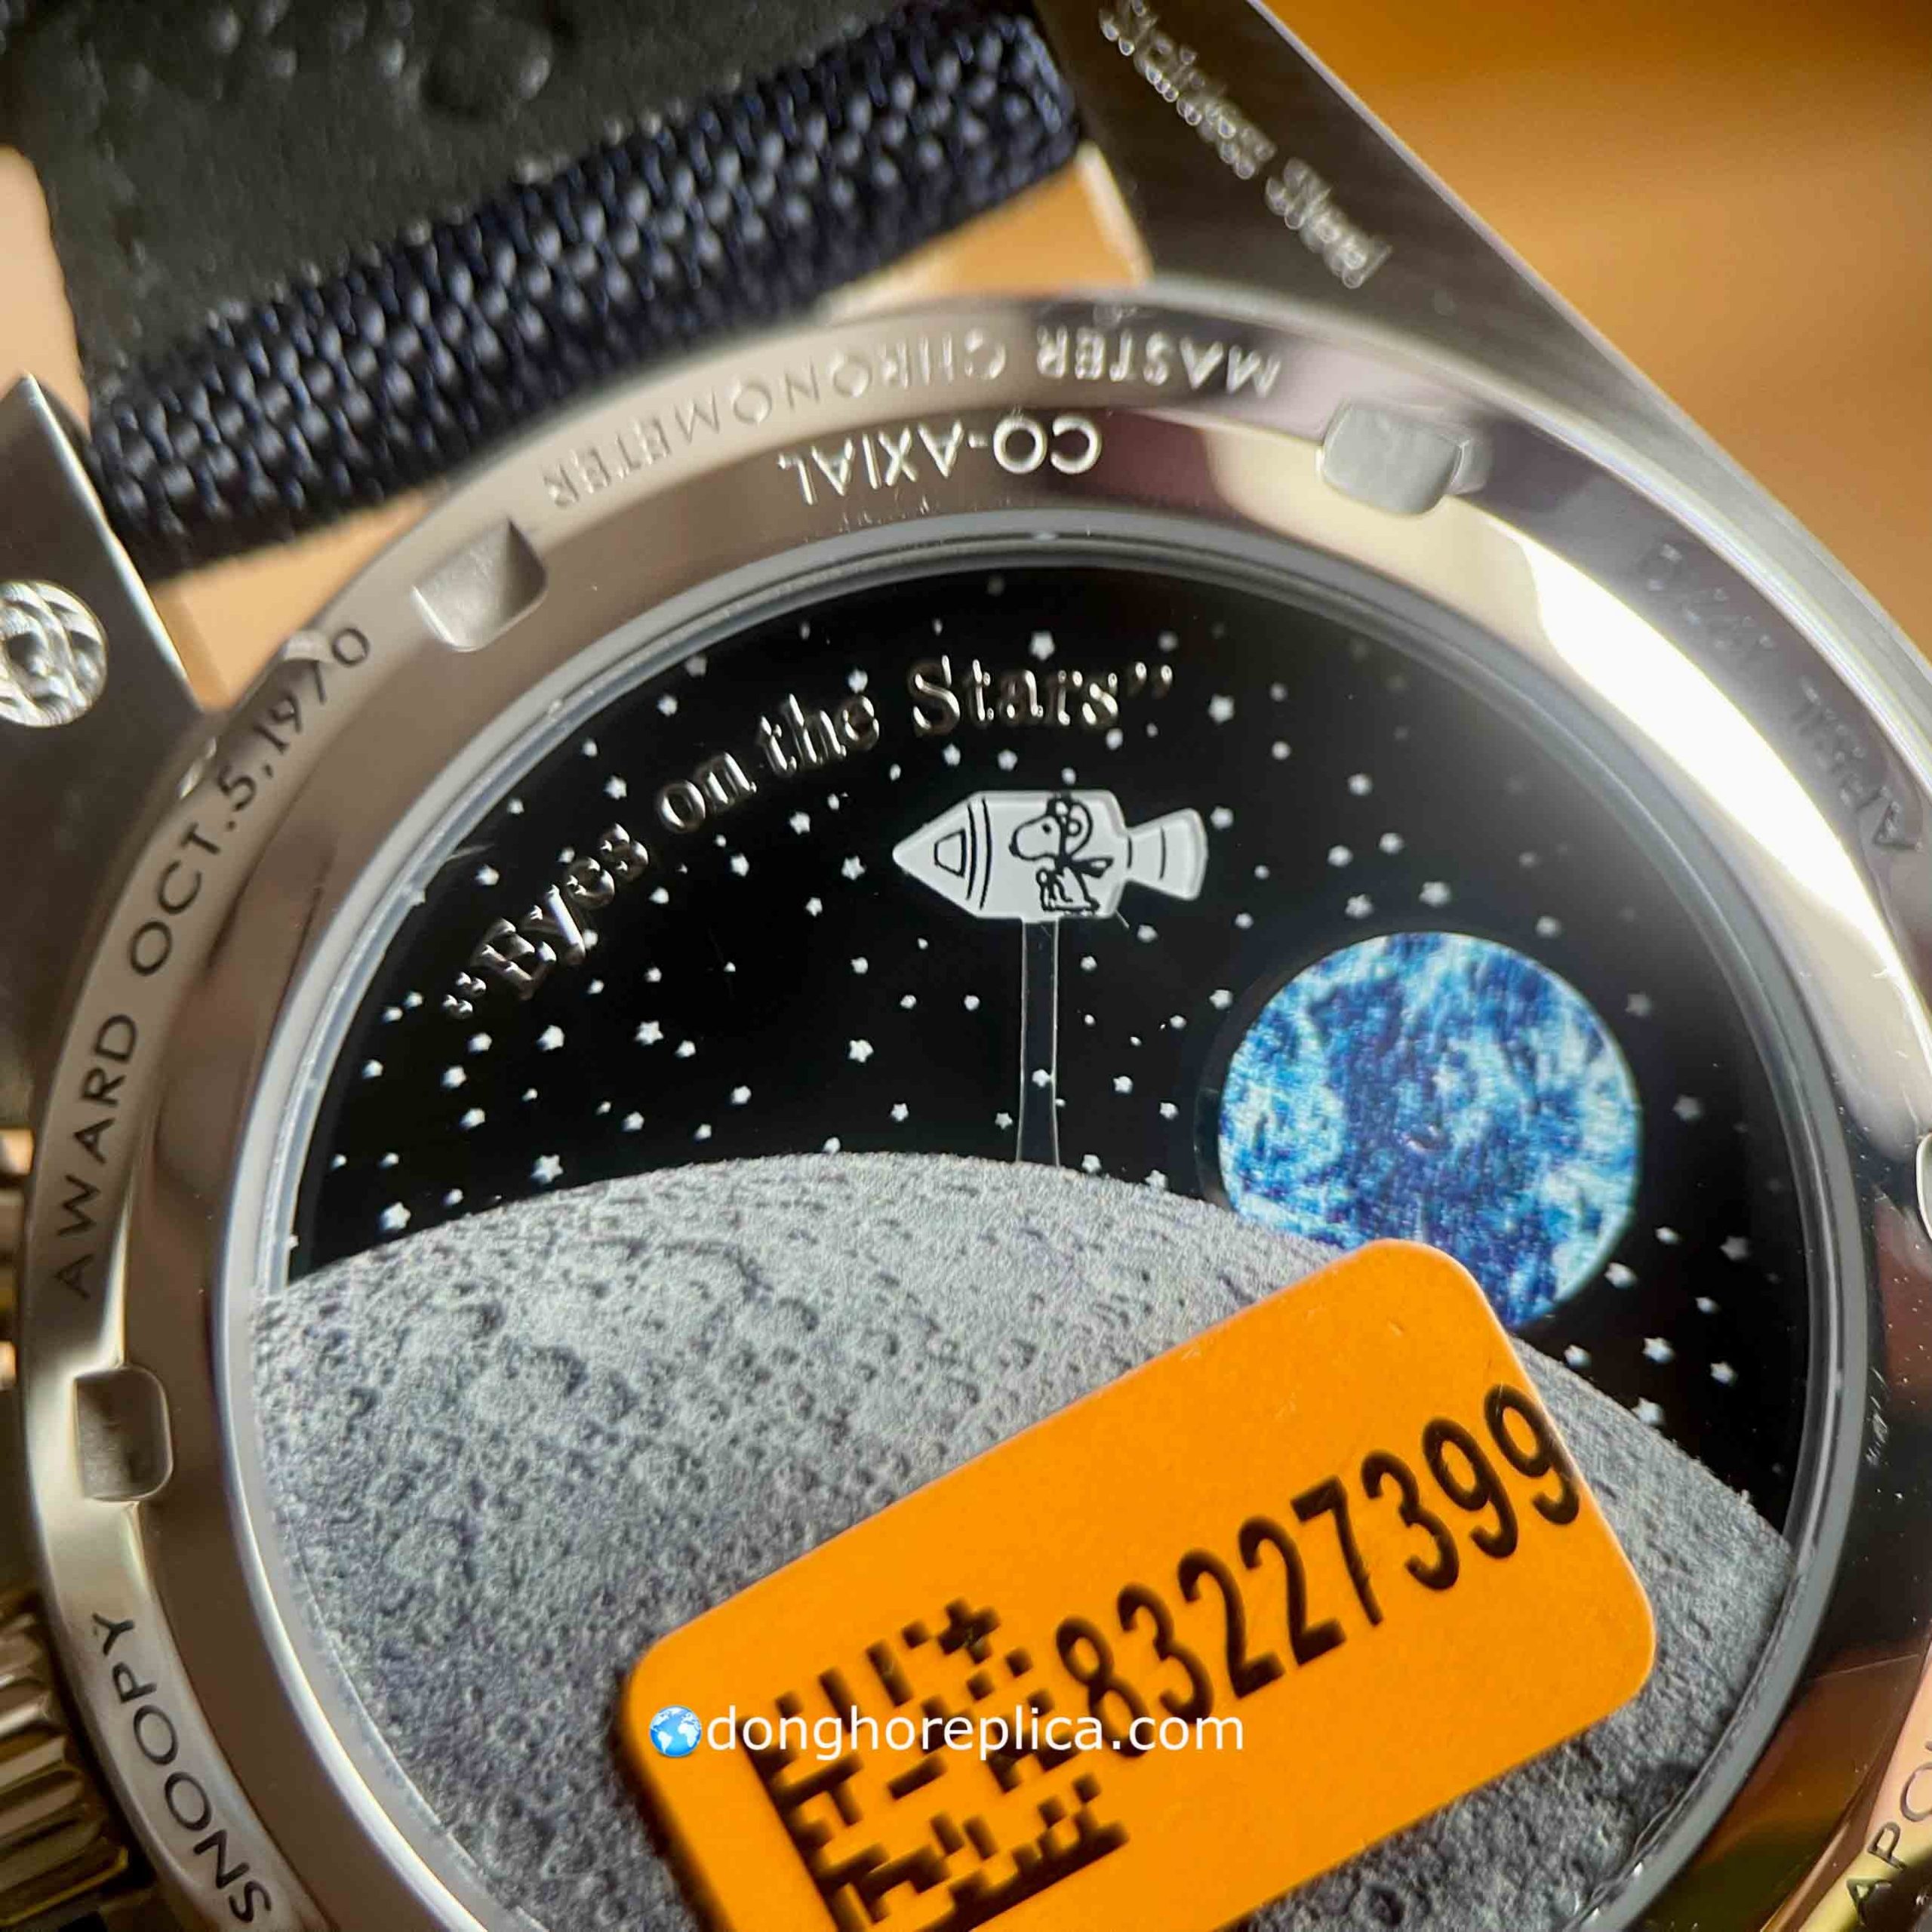 Đồng hồ Omega Speedmaster Pris 310.32.42.50.02.001 Snoopy Award trang bị cỗ máy vận hành ấn tượng